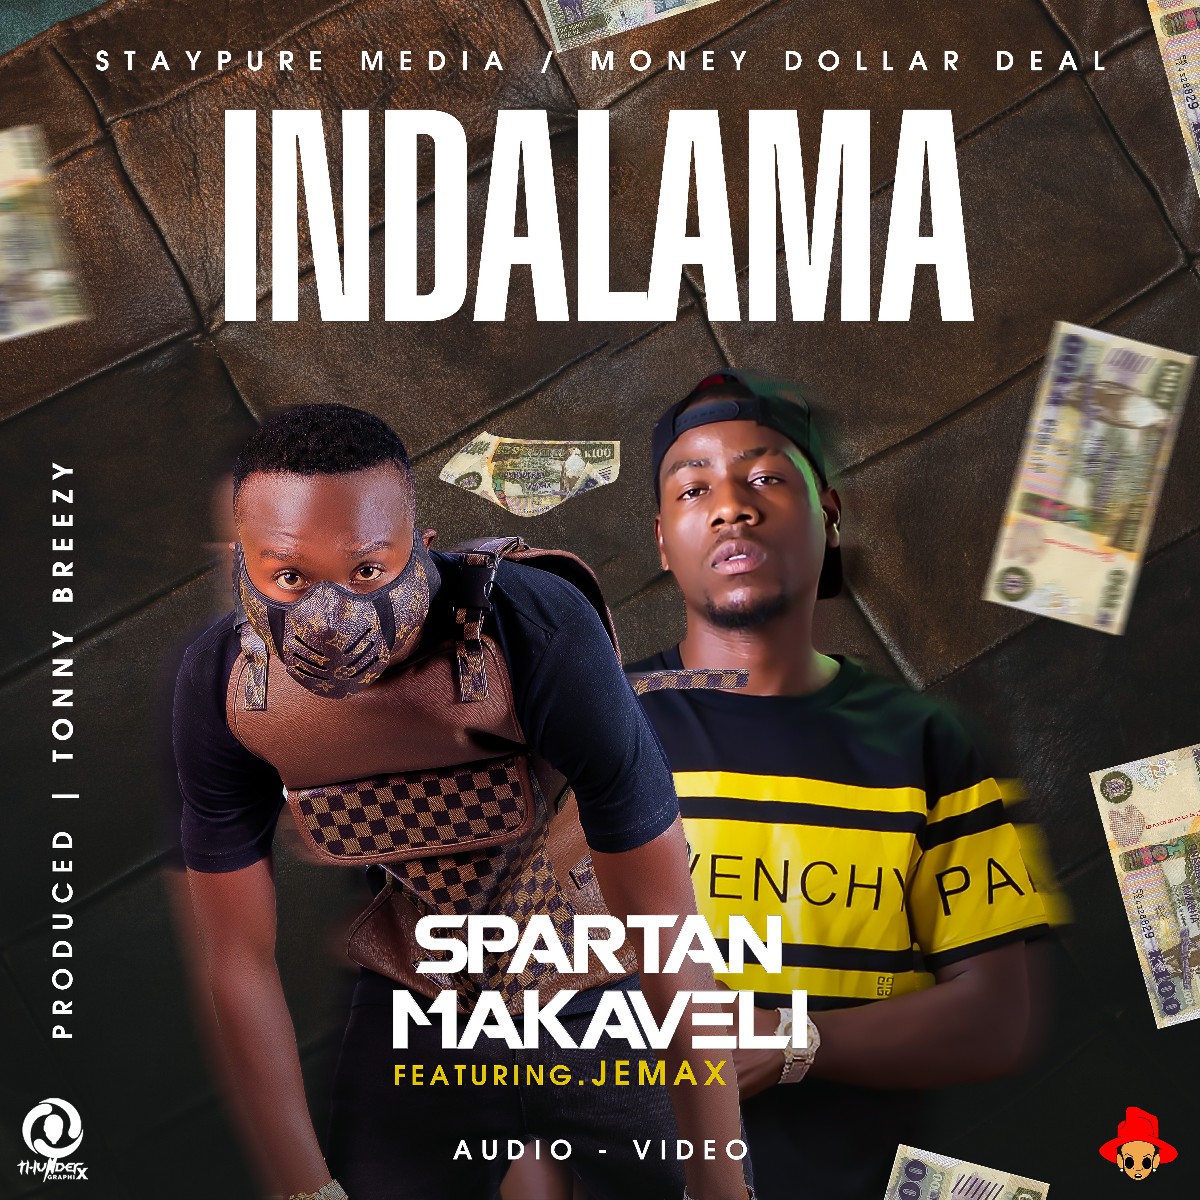 Spartan Makaveli ft. Jemax - Indalama